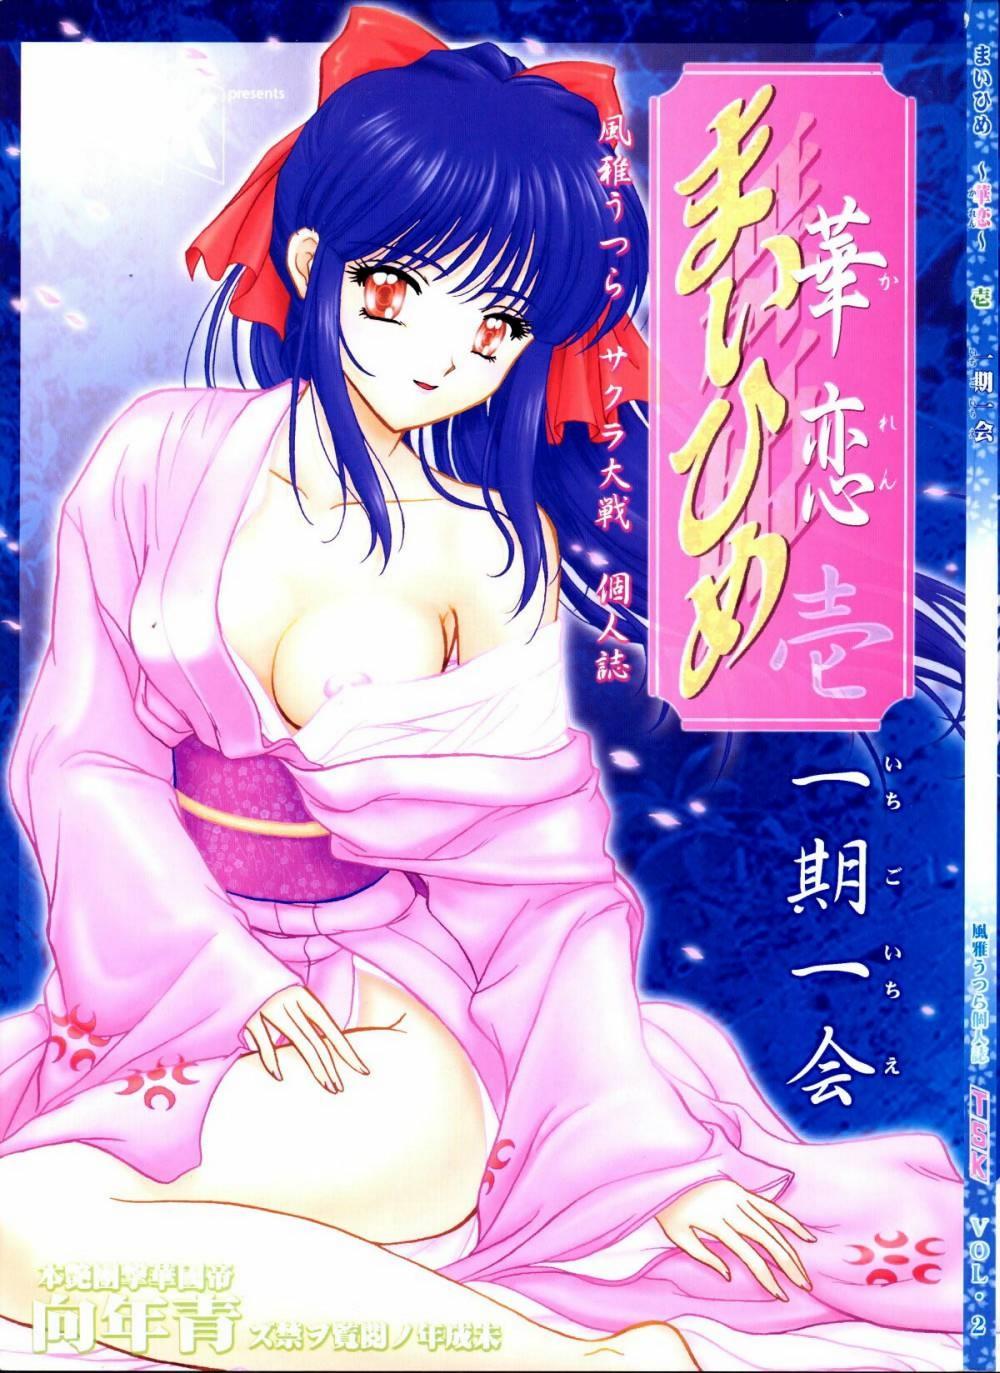 Self [TSK] Mai Hime ~Karen~ 1 Ichigo Ichie (Sakura Wars) - Sakura taisen Scene - Page 1